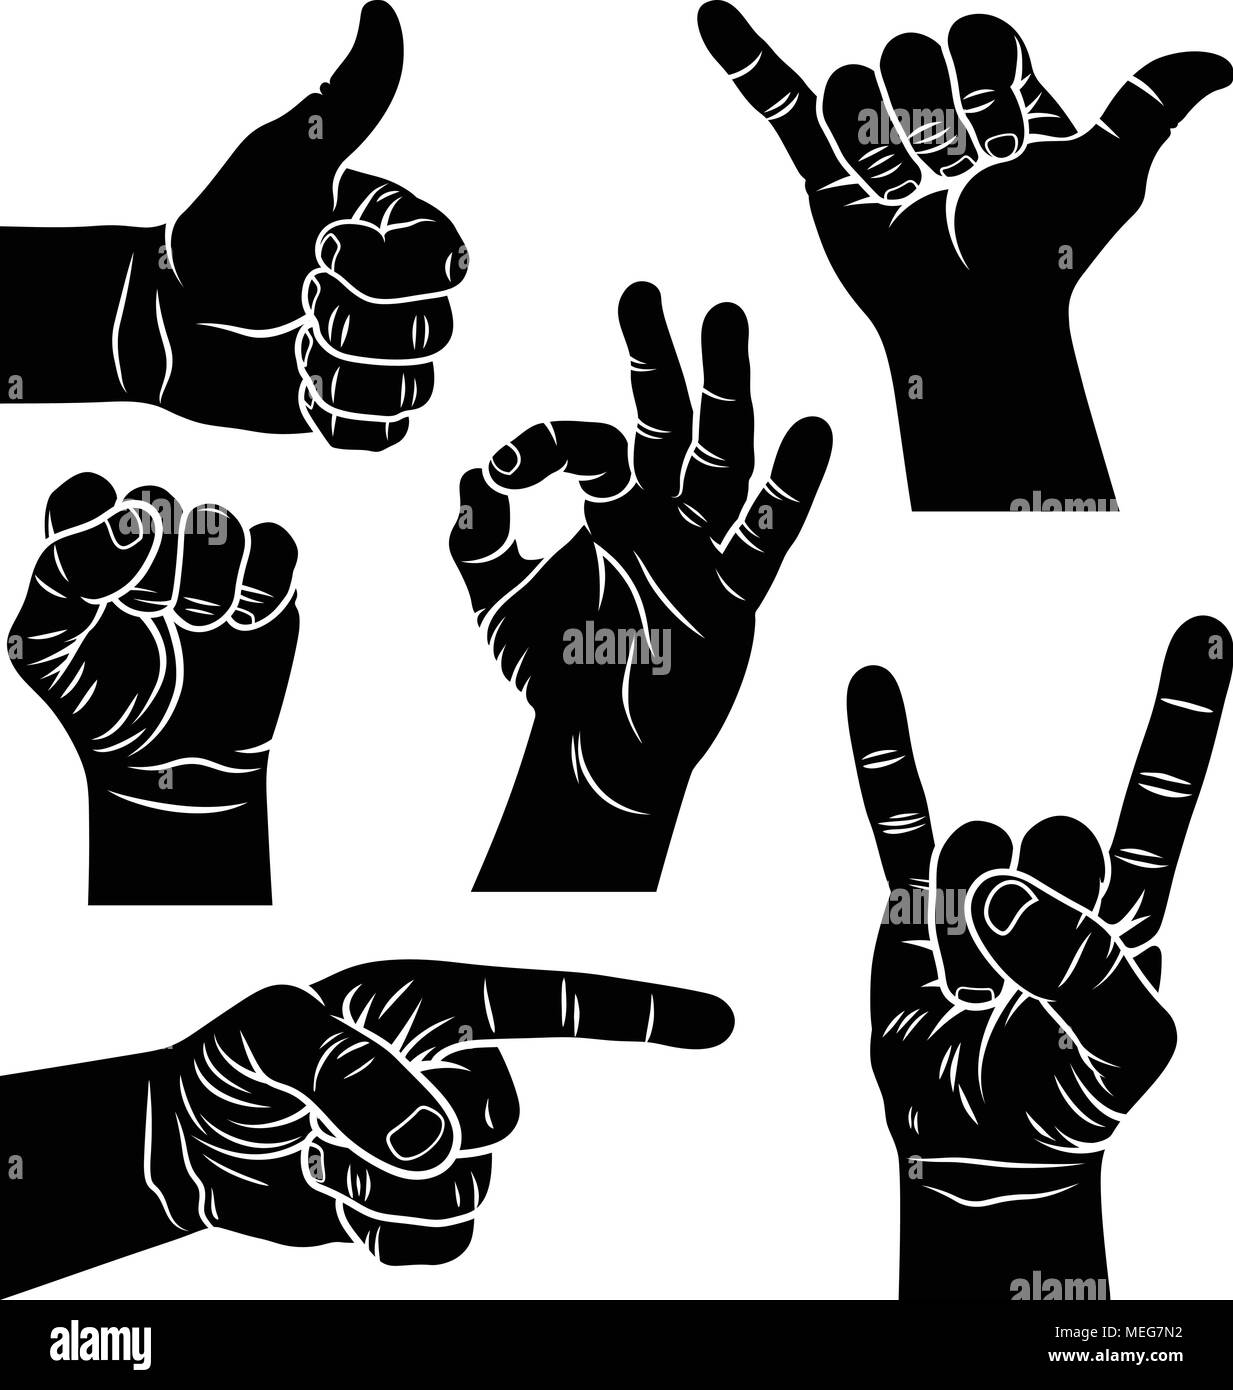 Gesten und Zeichen. Shaka Zeichen, männliche Faust, eine Hand zeigt Symbol wie, zeigende Hand, Rock und Roll Handzeichen, Ok Handzeichen. Vector Illustration Stock Vektor